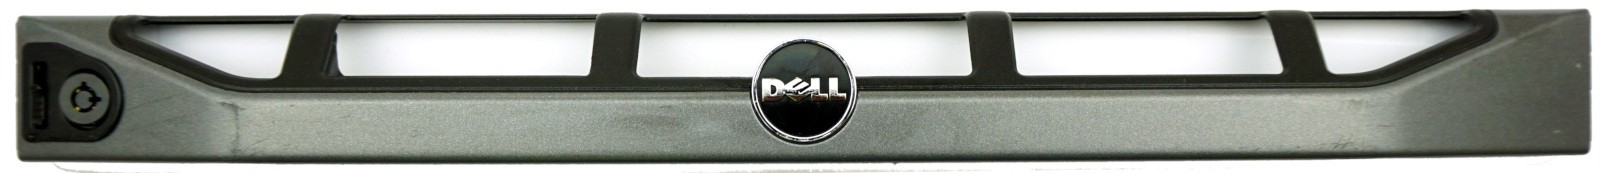 Dell PowerEdge R610 Front Bezel No Key